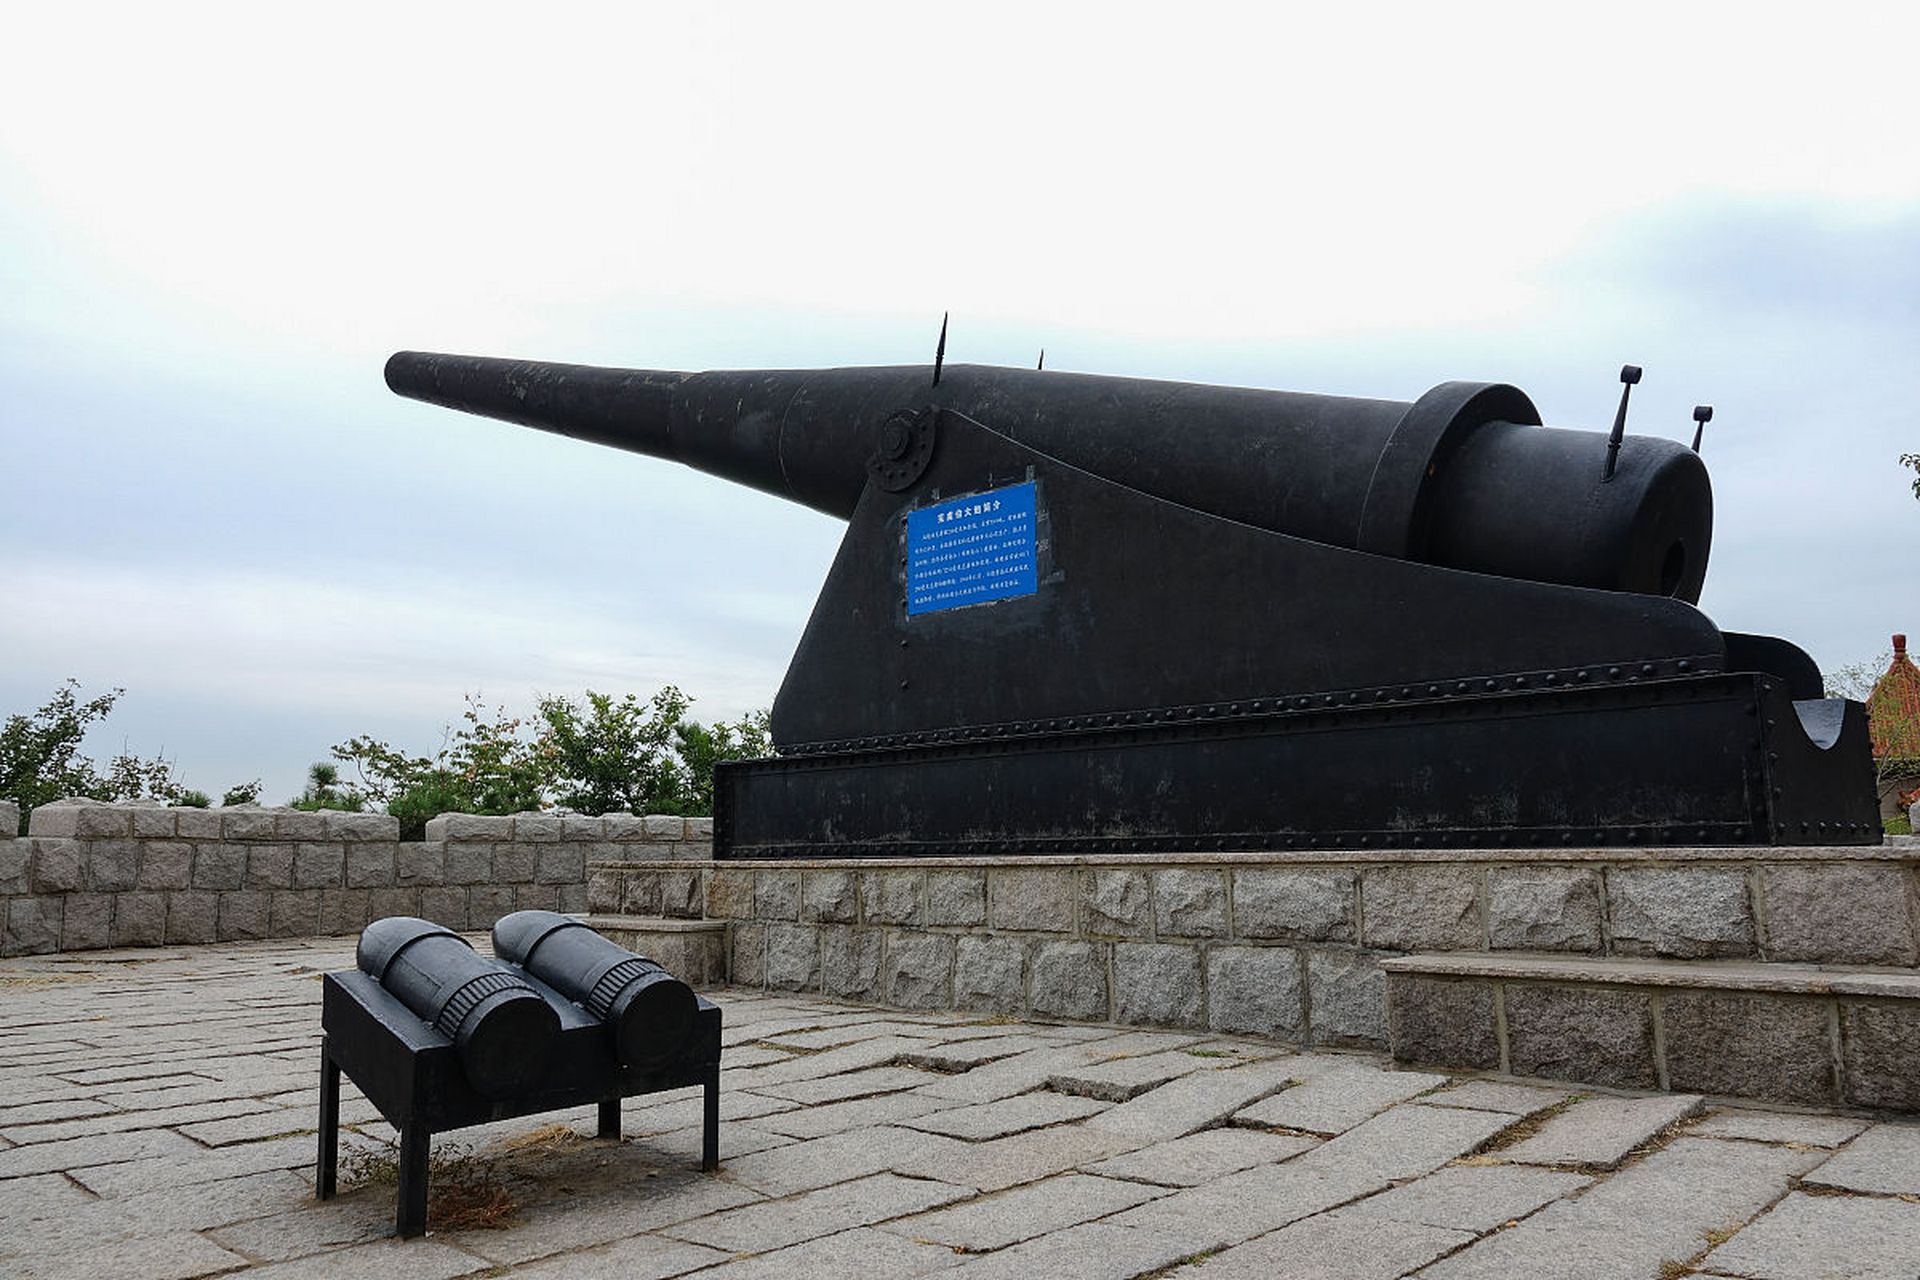 旅顺口炮台是中国近代史上的一个重要历史遗迹,位于大连市旅顺口区